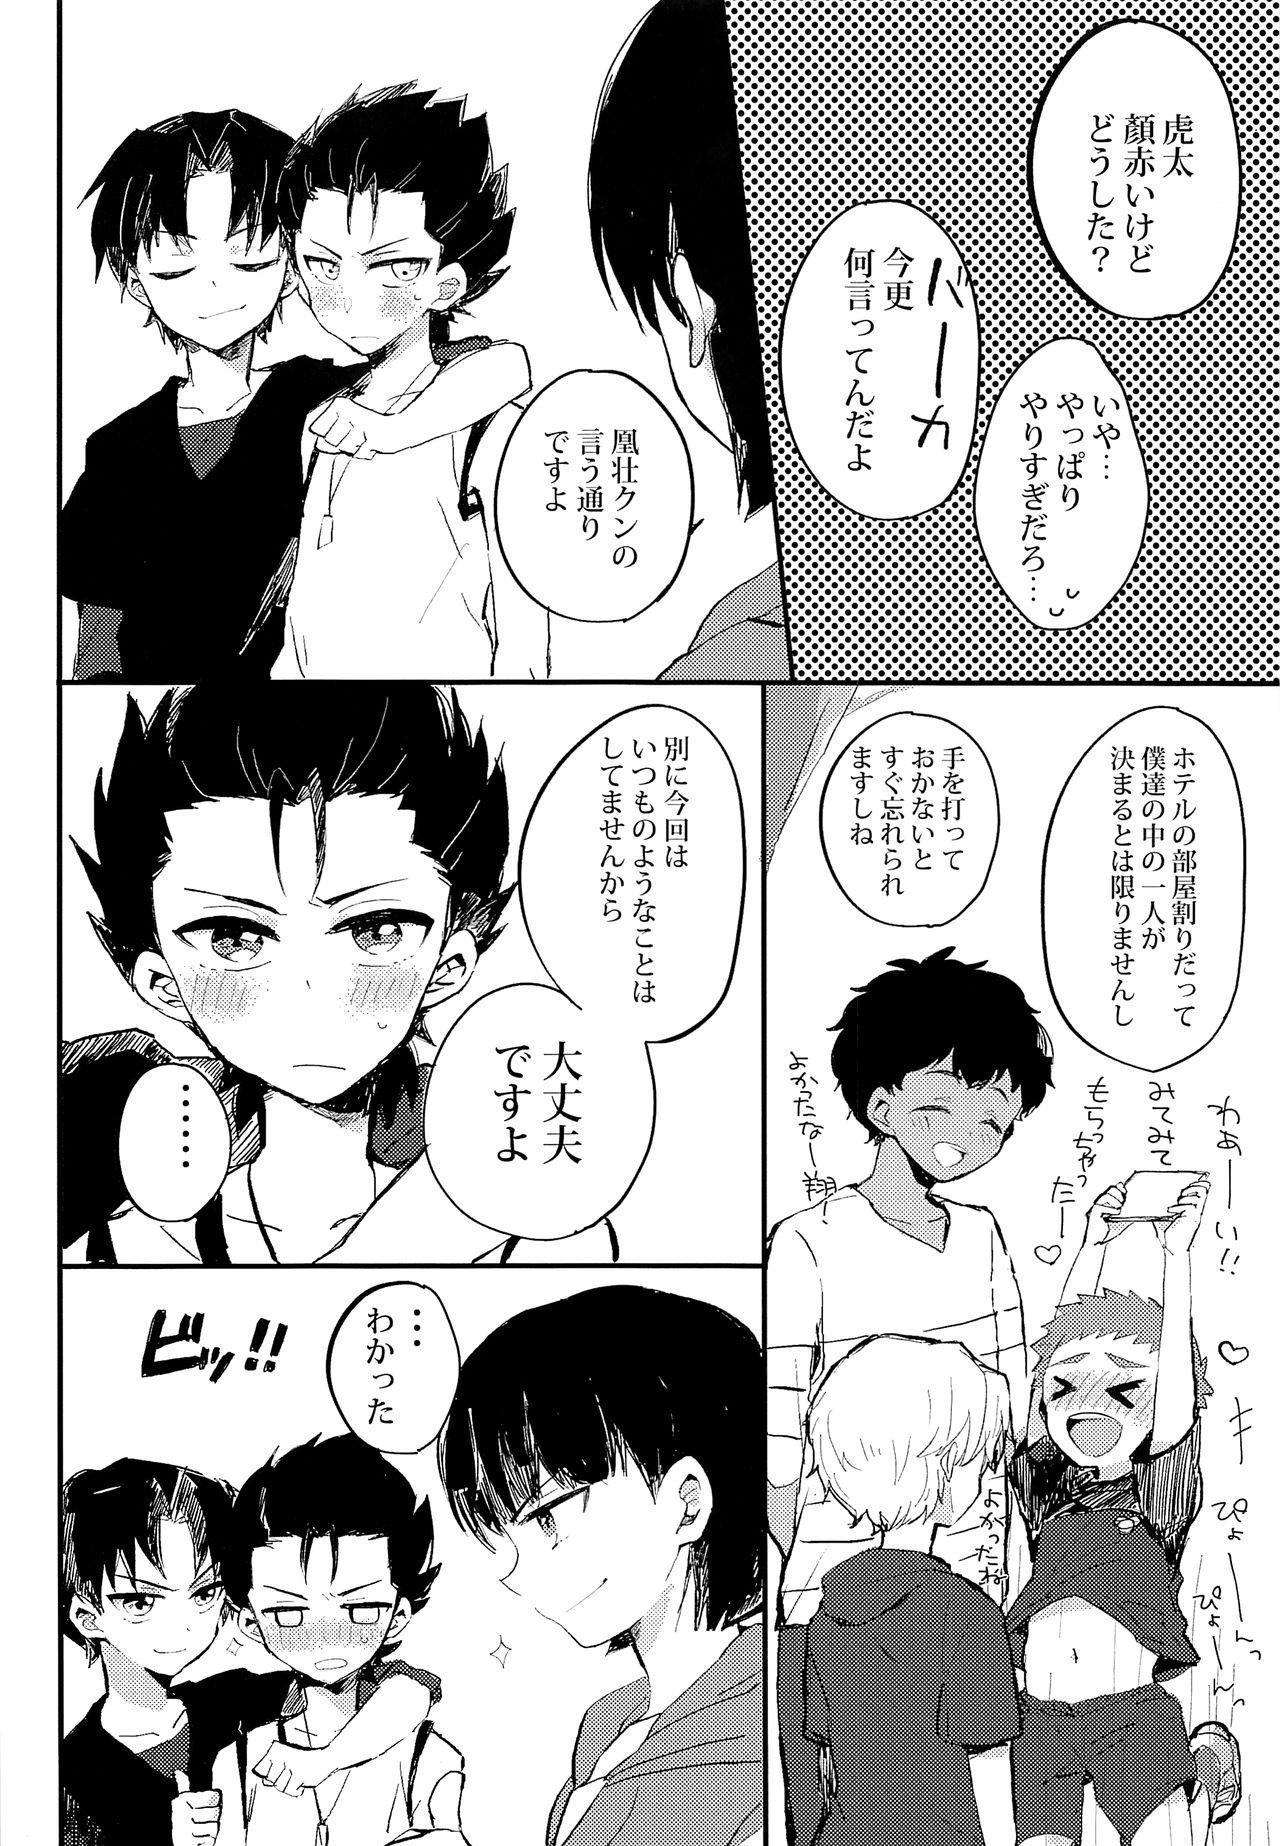 Affair Himitsu no daisuki - Ginga e kickoff Squirters - Page 5